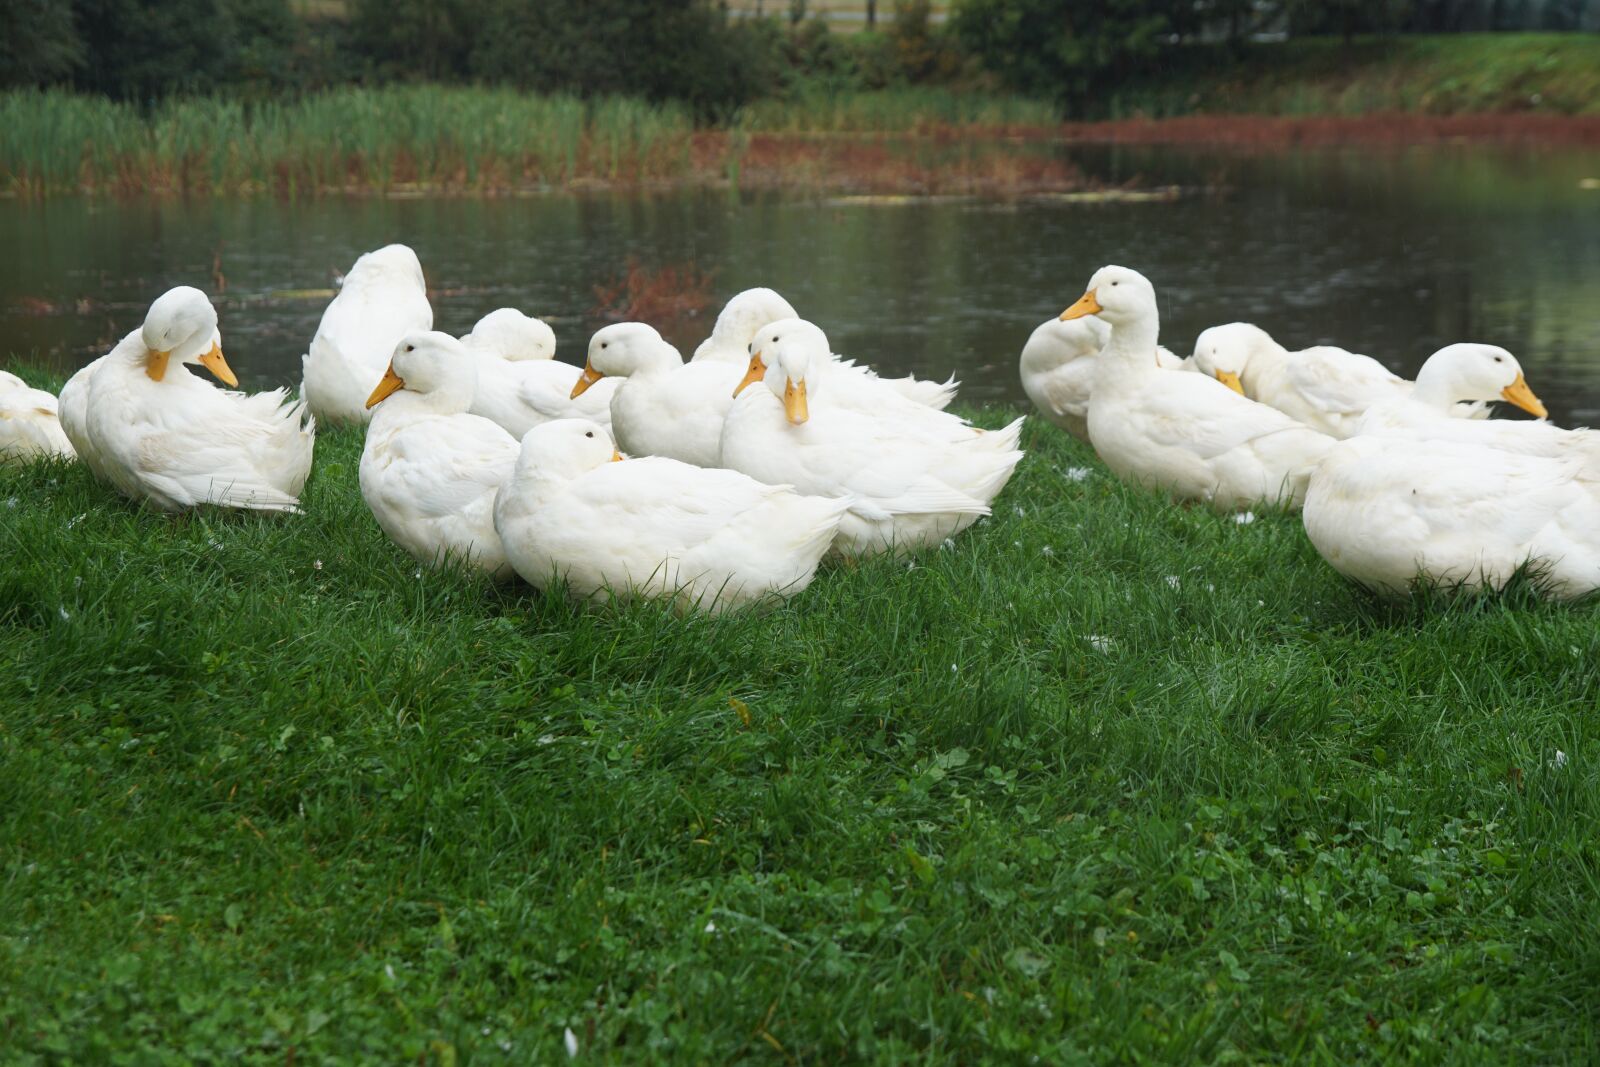 Sony SLT-A68 sample photo. Ducks, geese, bird photography